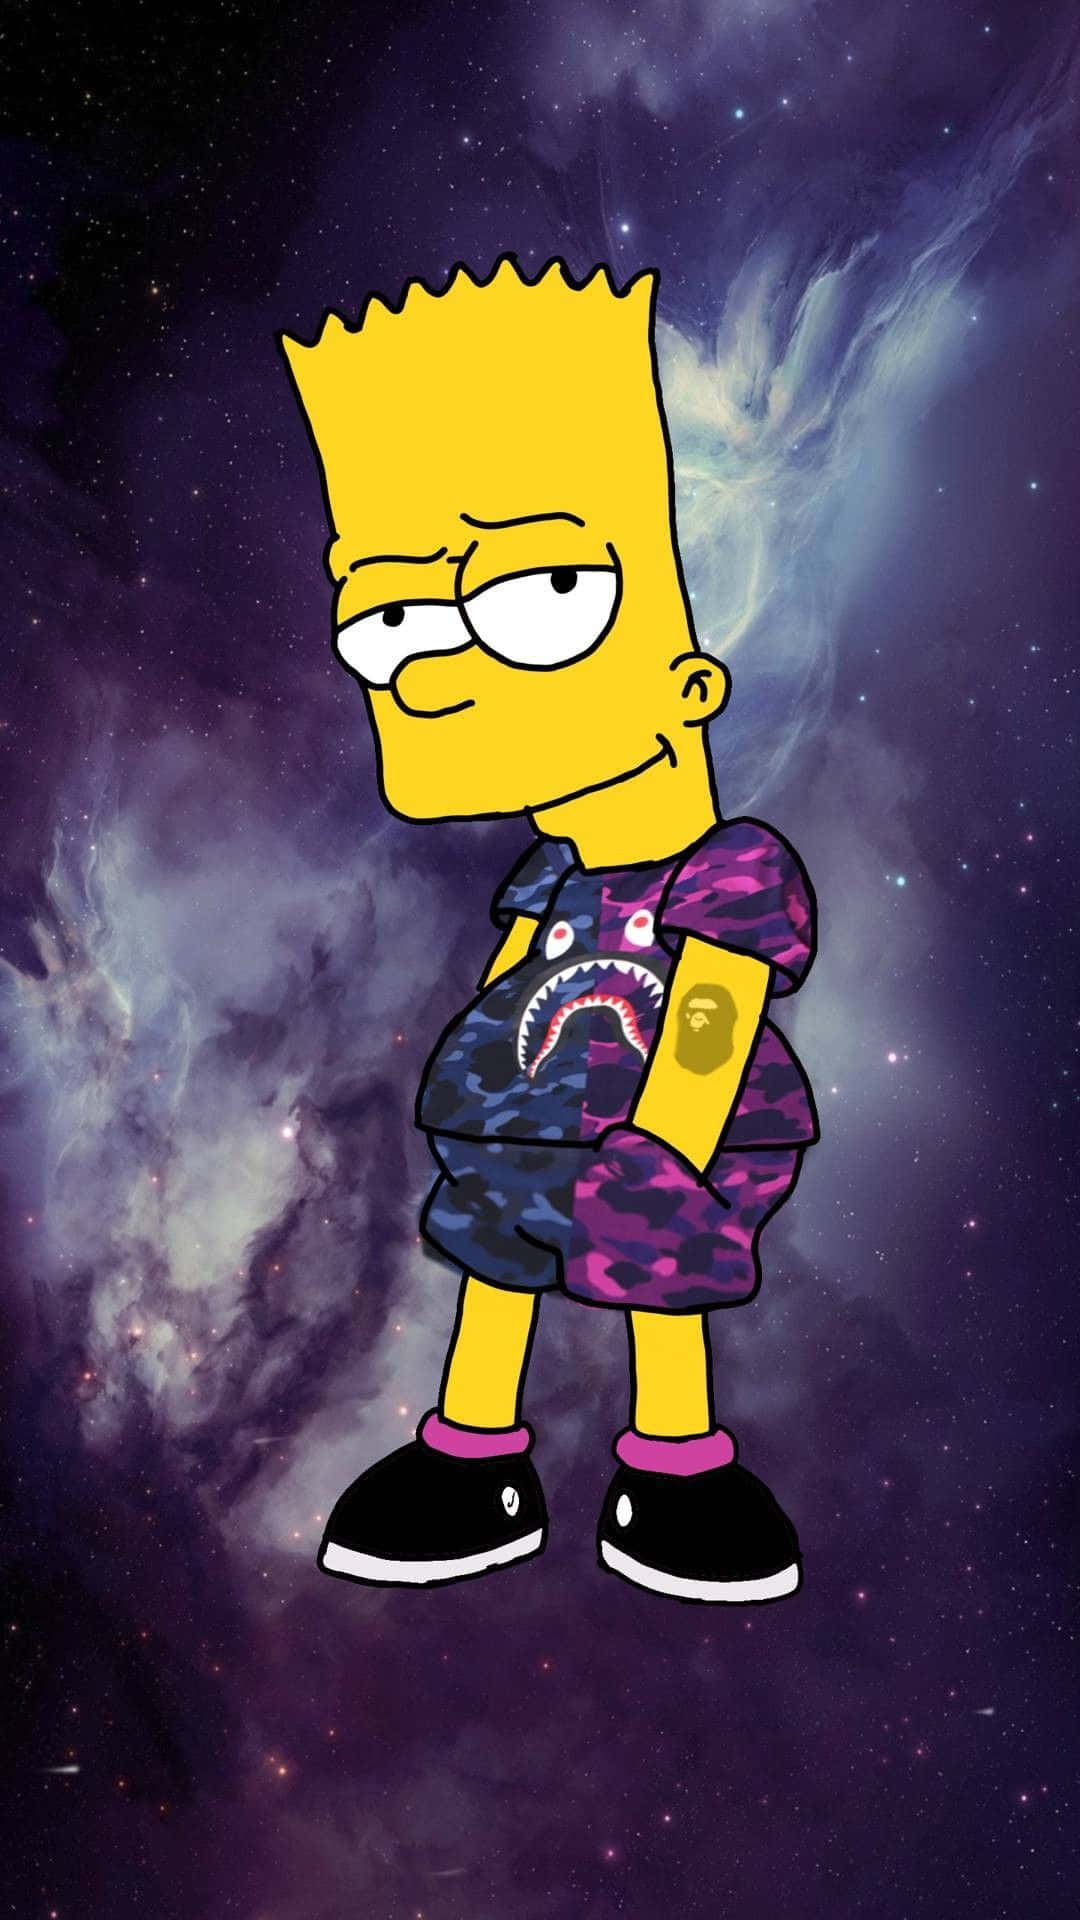 En psykedelisk oplevelse med Bart Simpson. Wallpaper